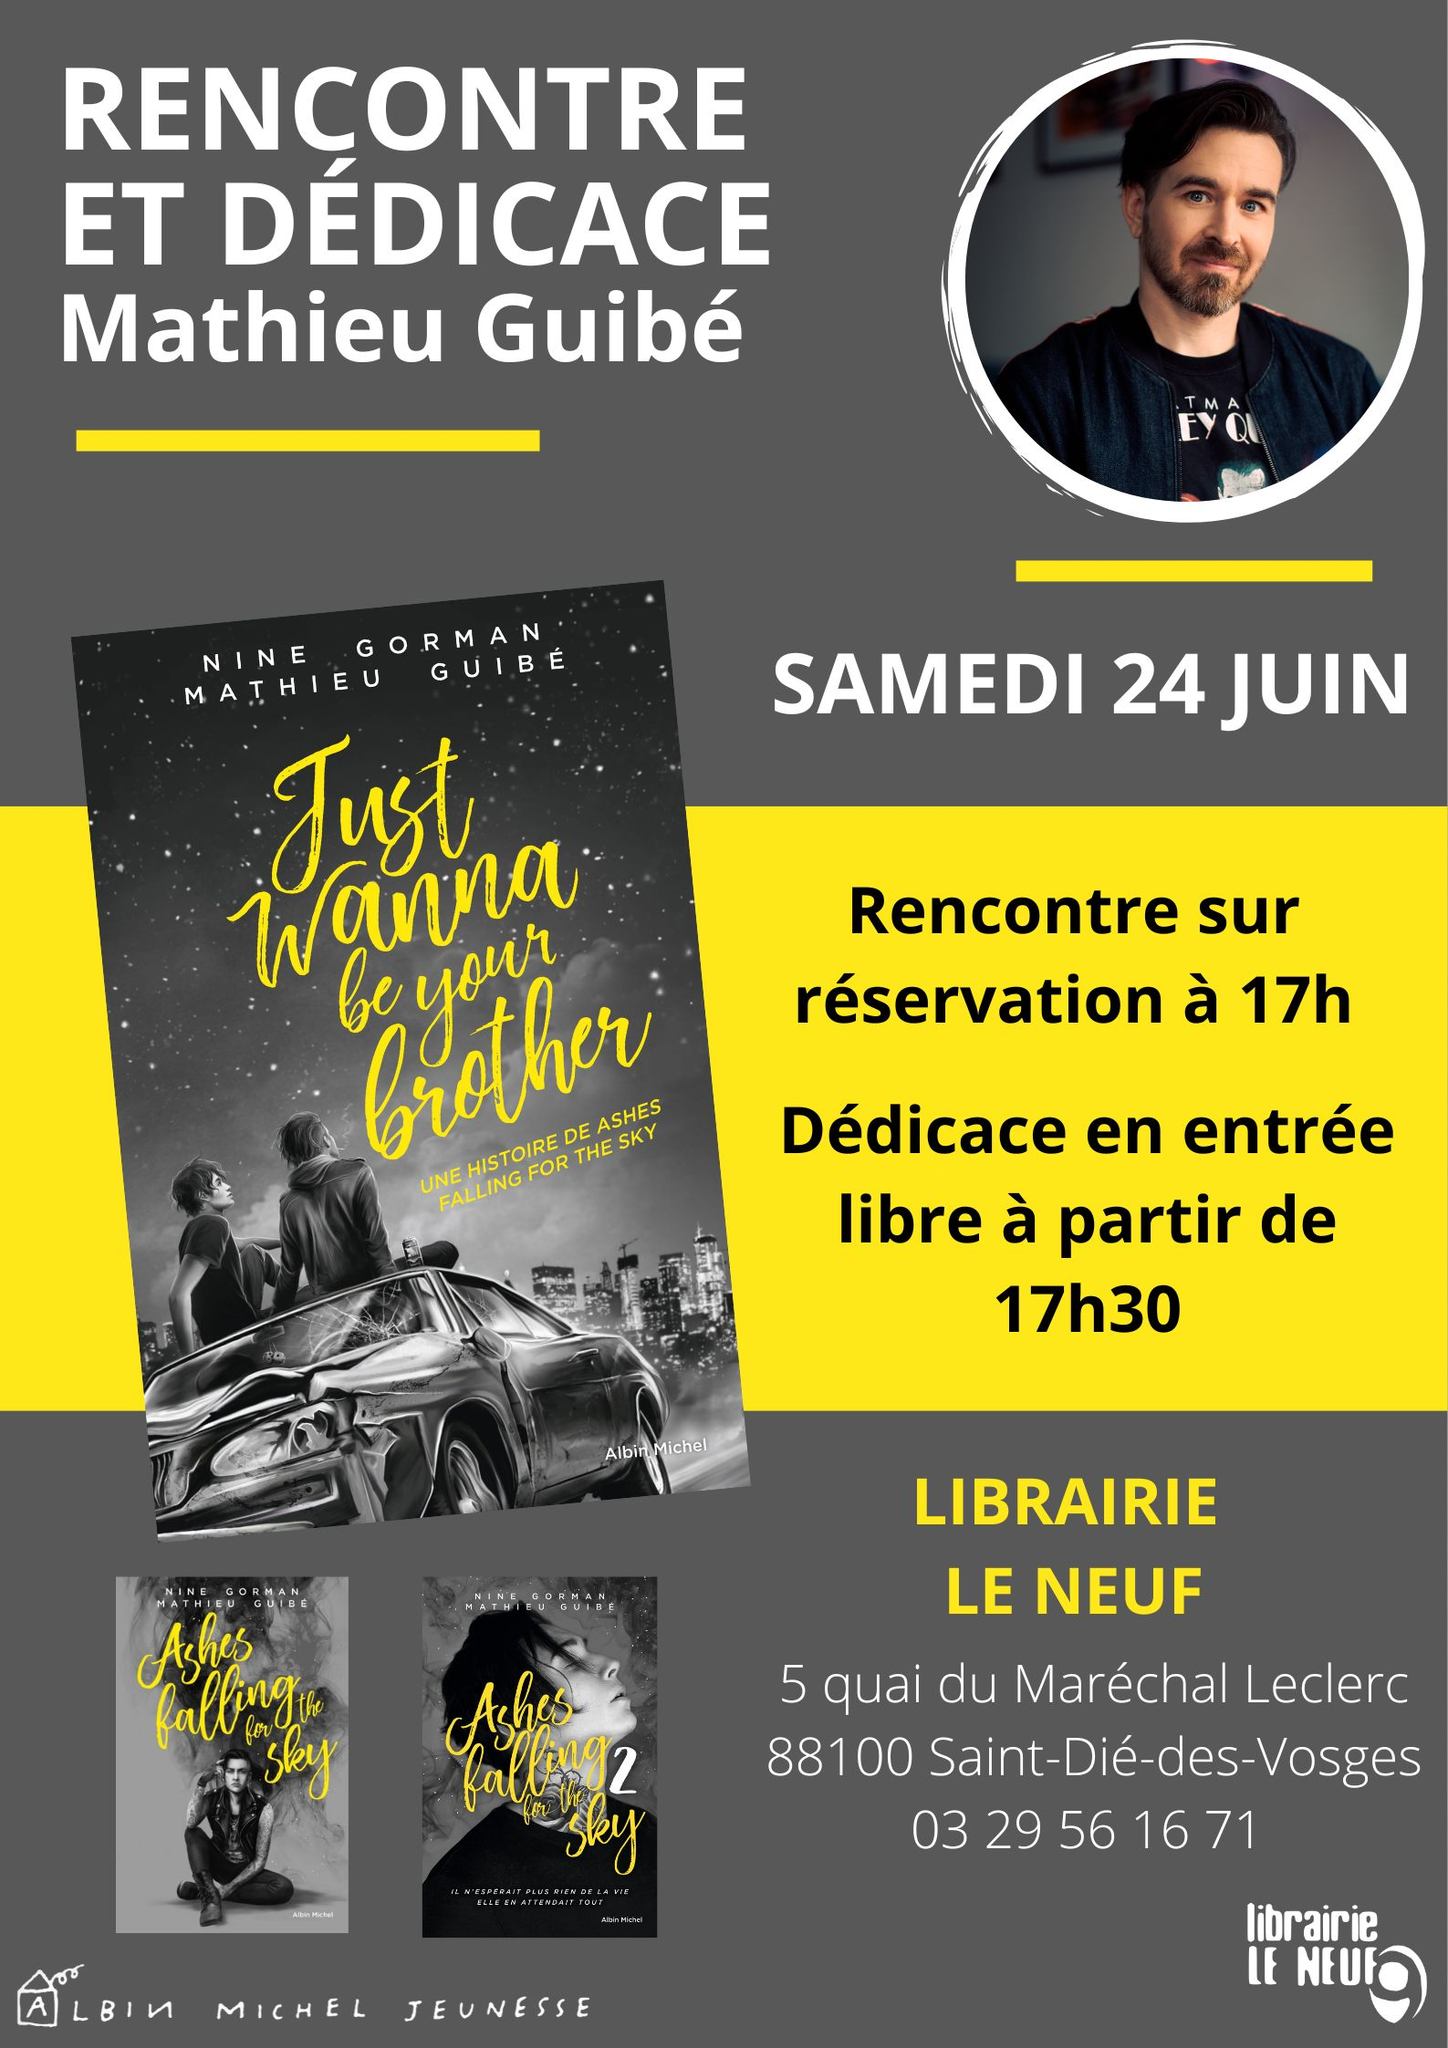 La Librairie Le Neuf part en Livre avec Mathieu Guibé